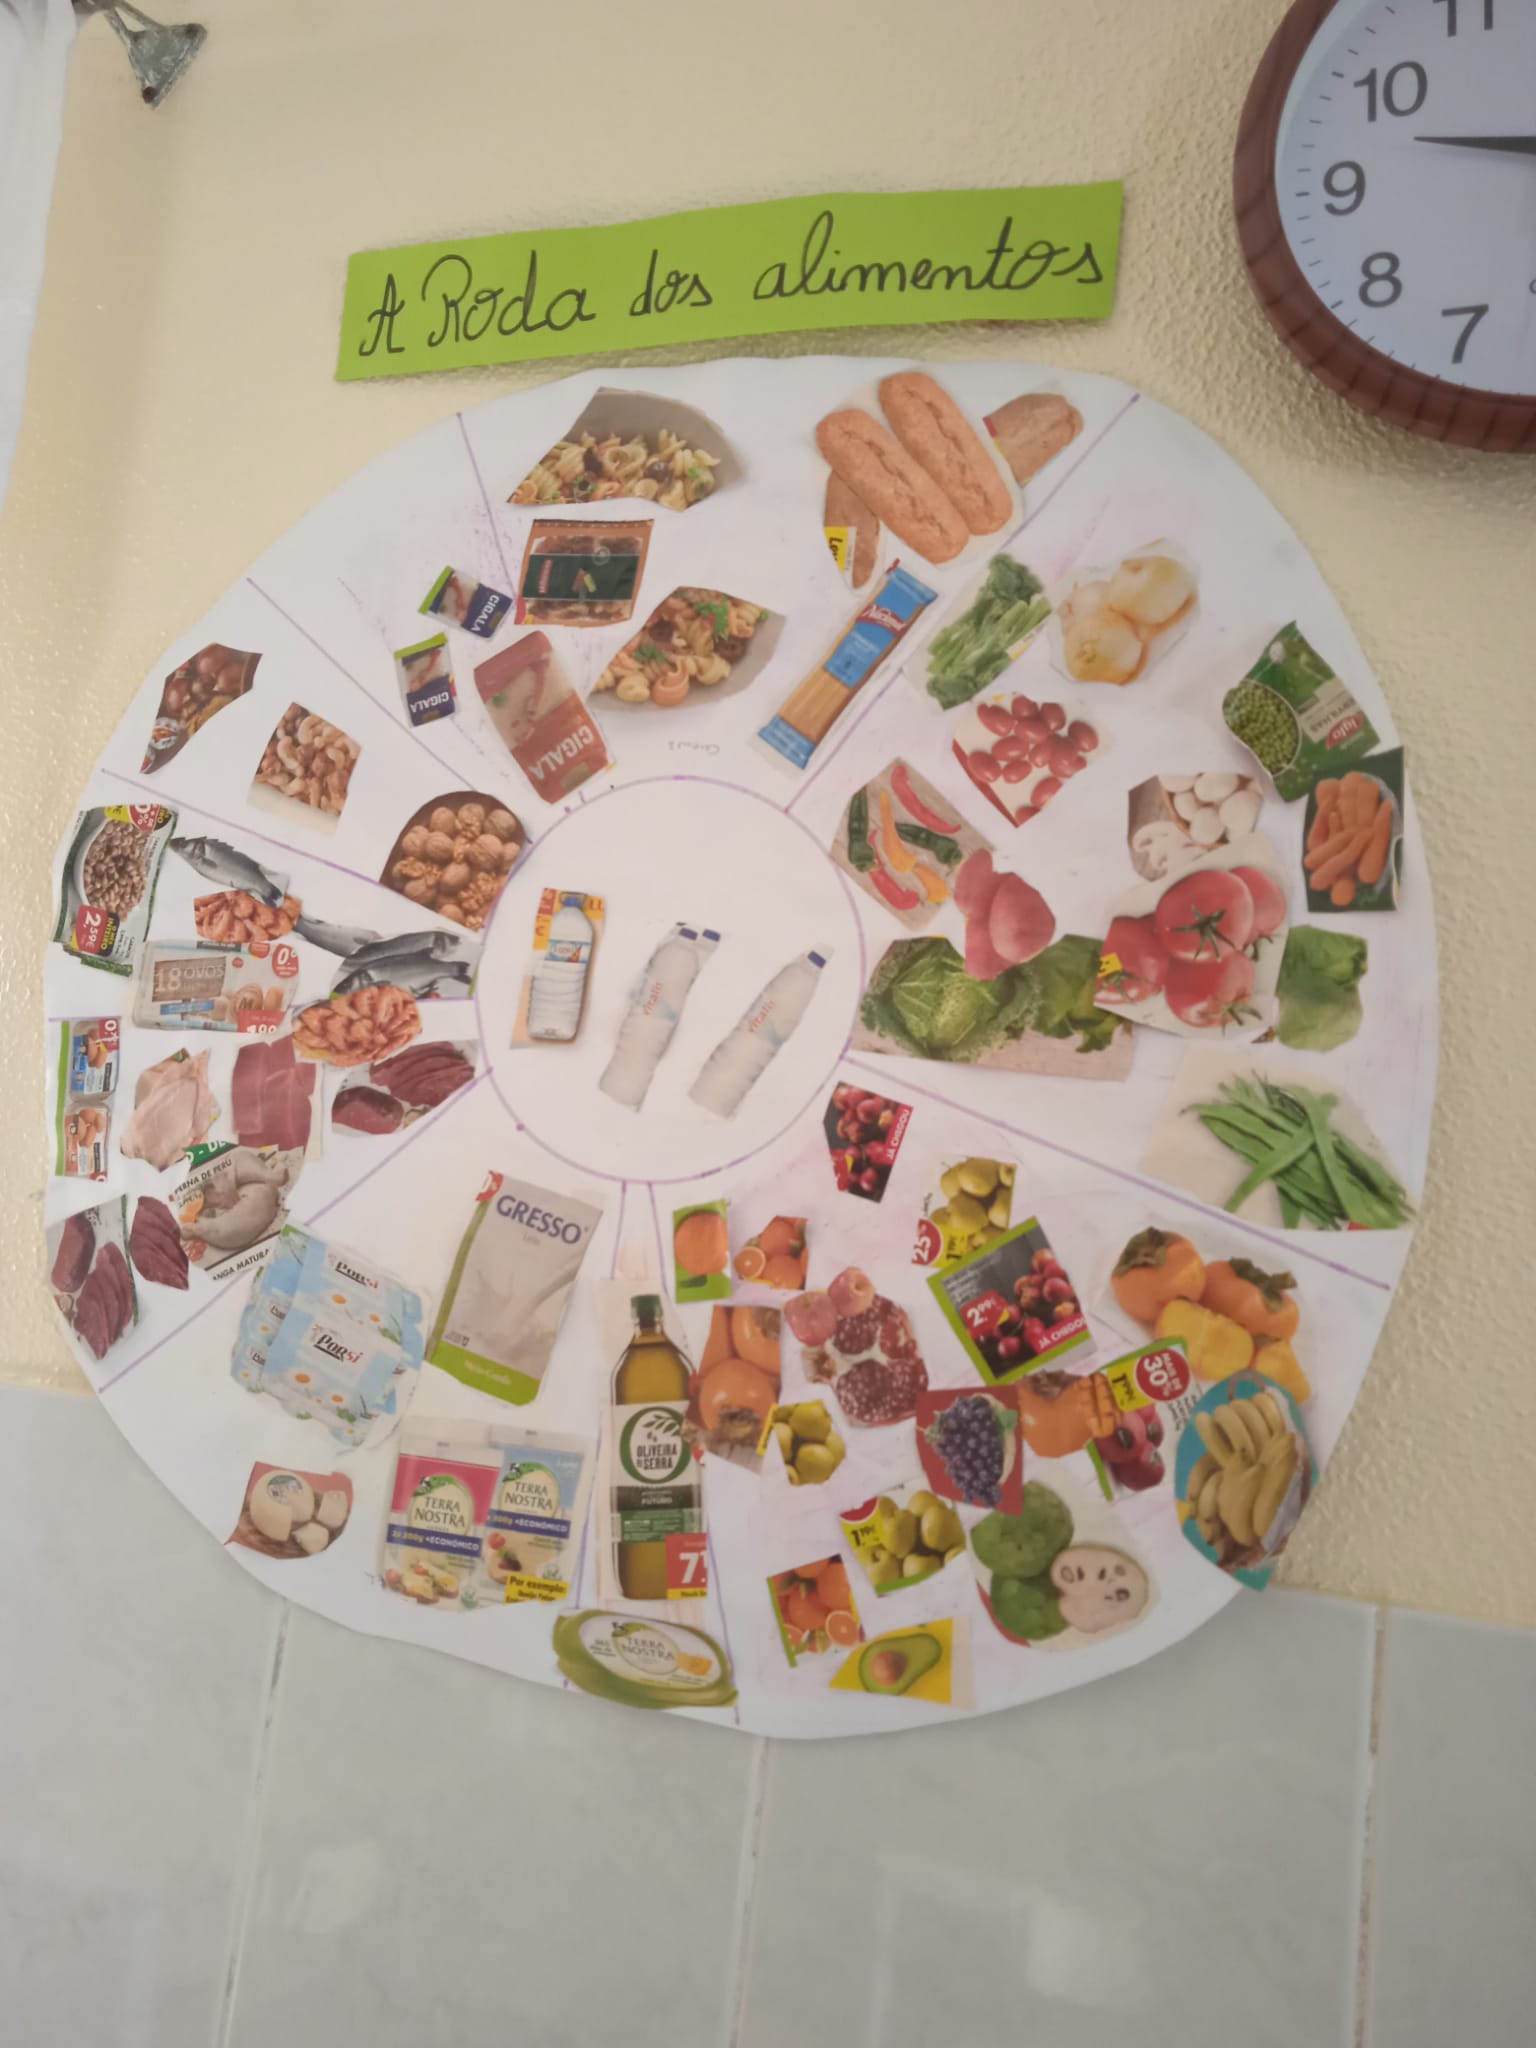 Painel com a Roda dos Alimentos elaborada pelos alunos.